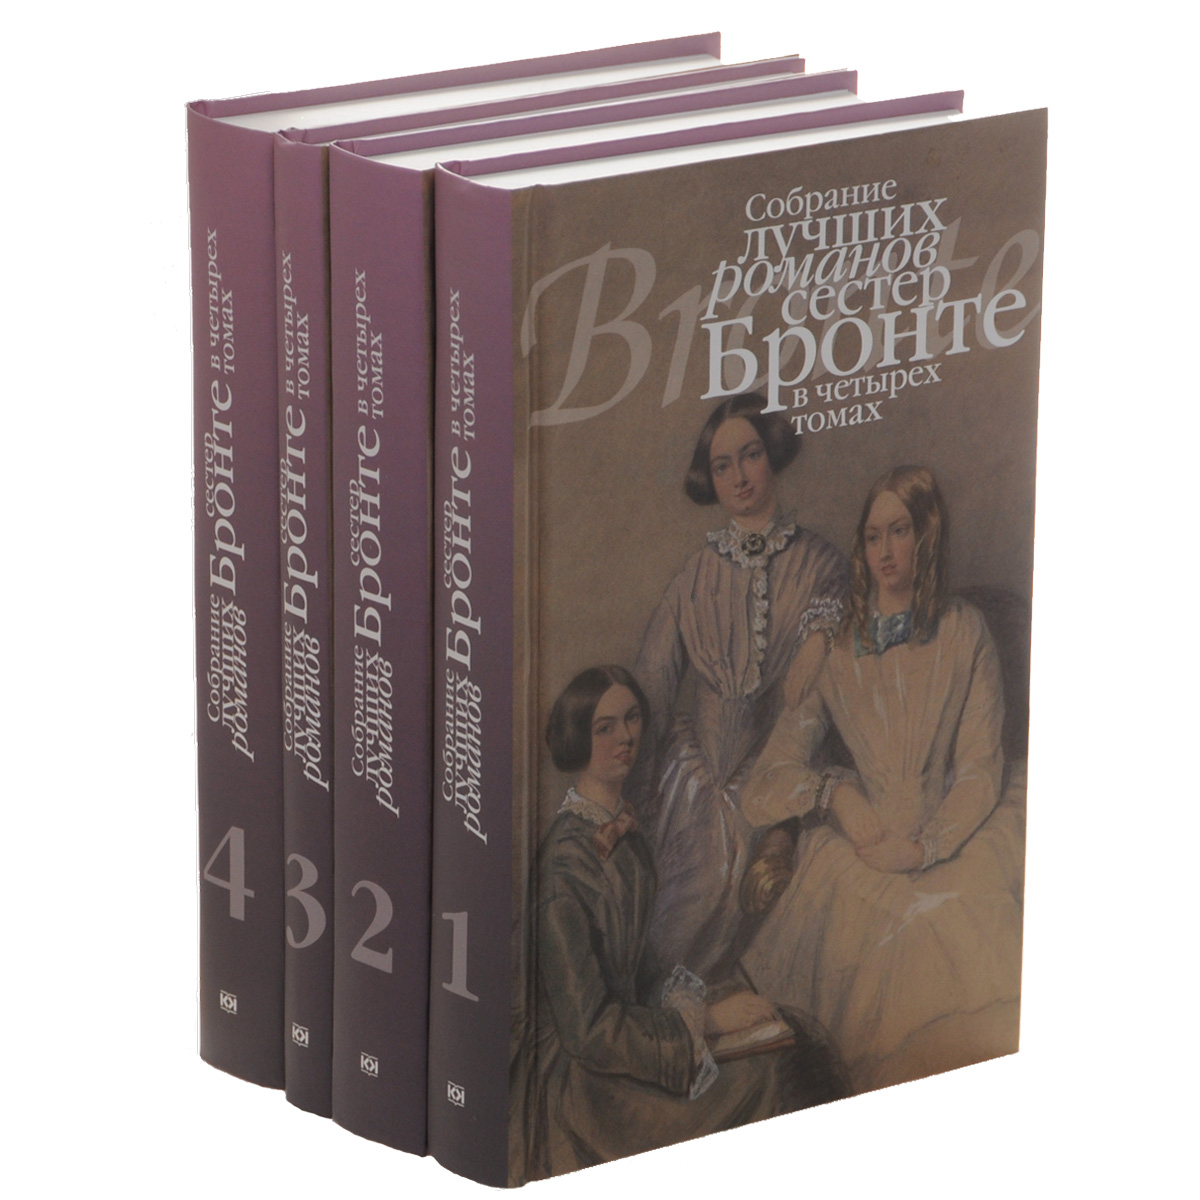 Собрание лучших романов сестер Бронте. В 4 томах (комплект)